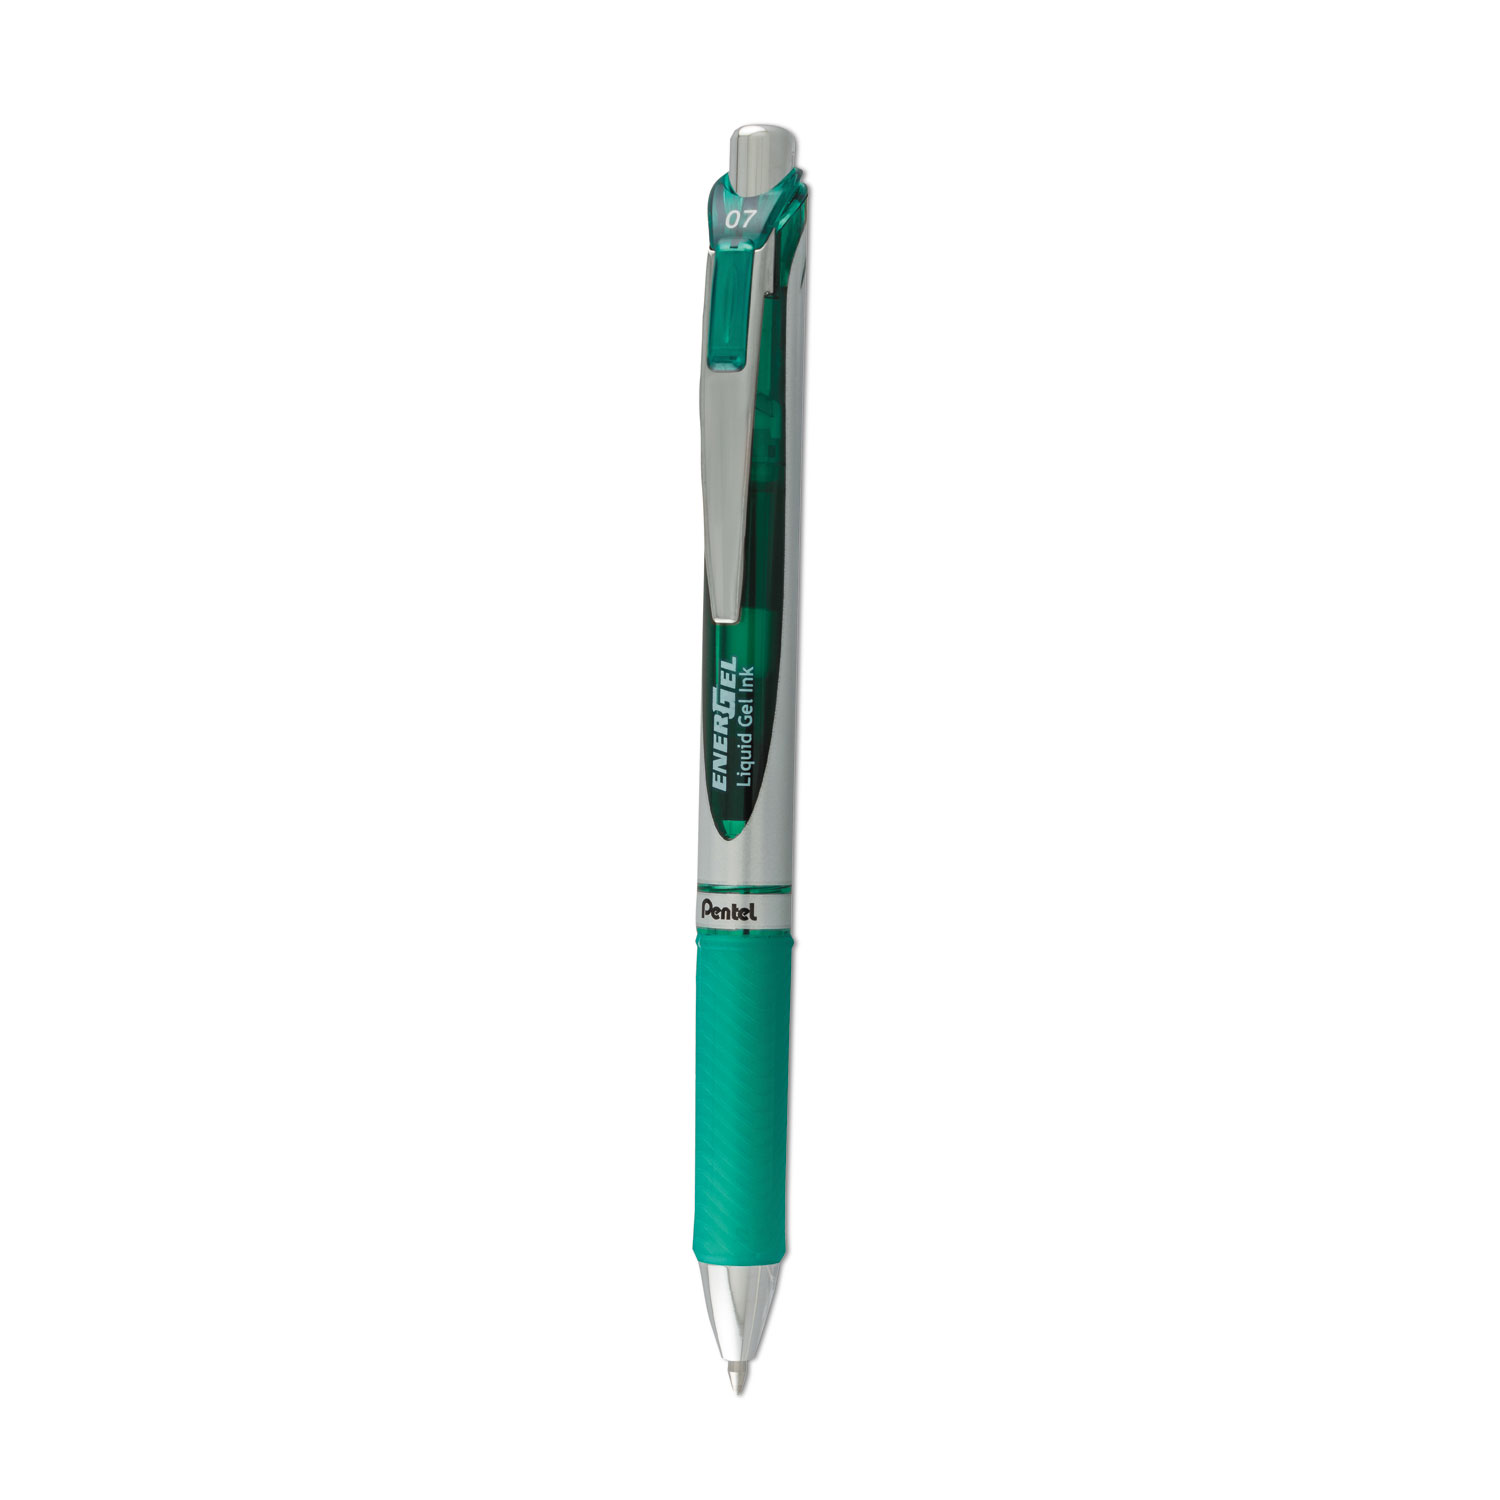  Pentel BL77D EnerGel RTX Retractable Gel Pen, Medium 0.7mm, Green Ink, Green/Gray Barrel (PENBL77D) 